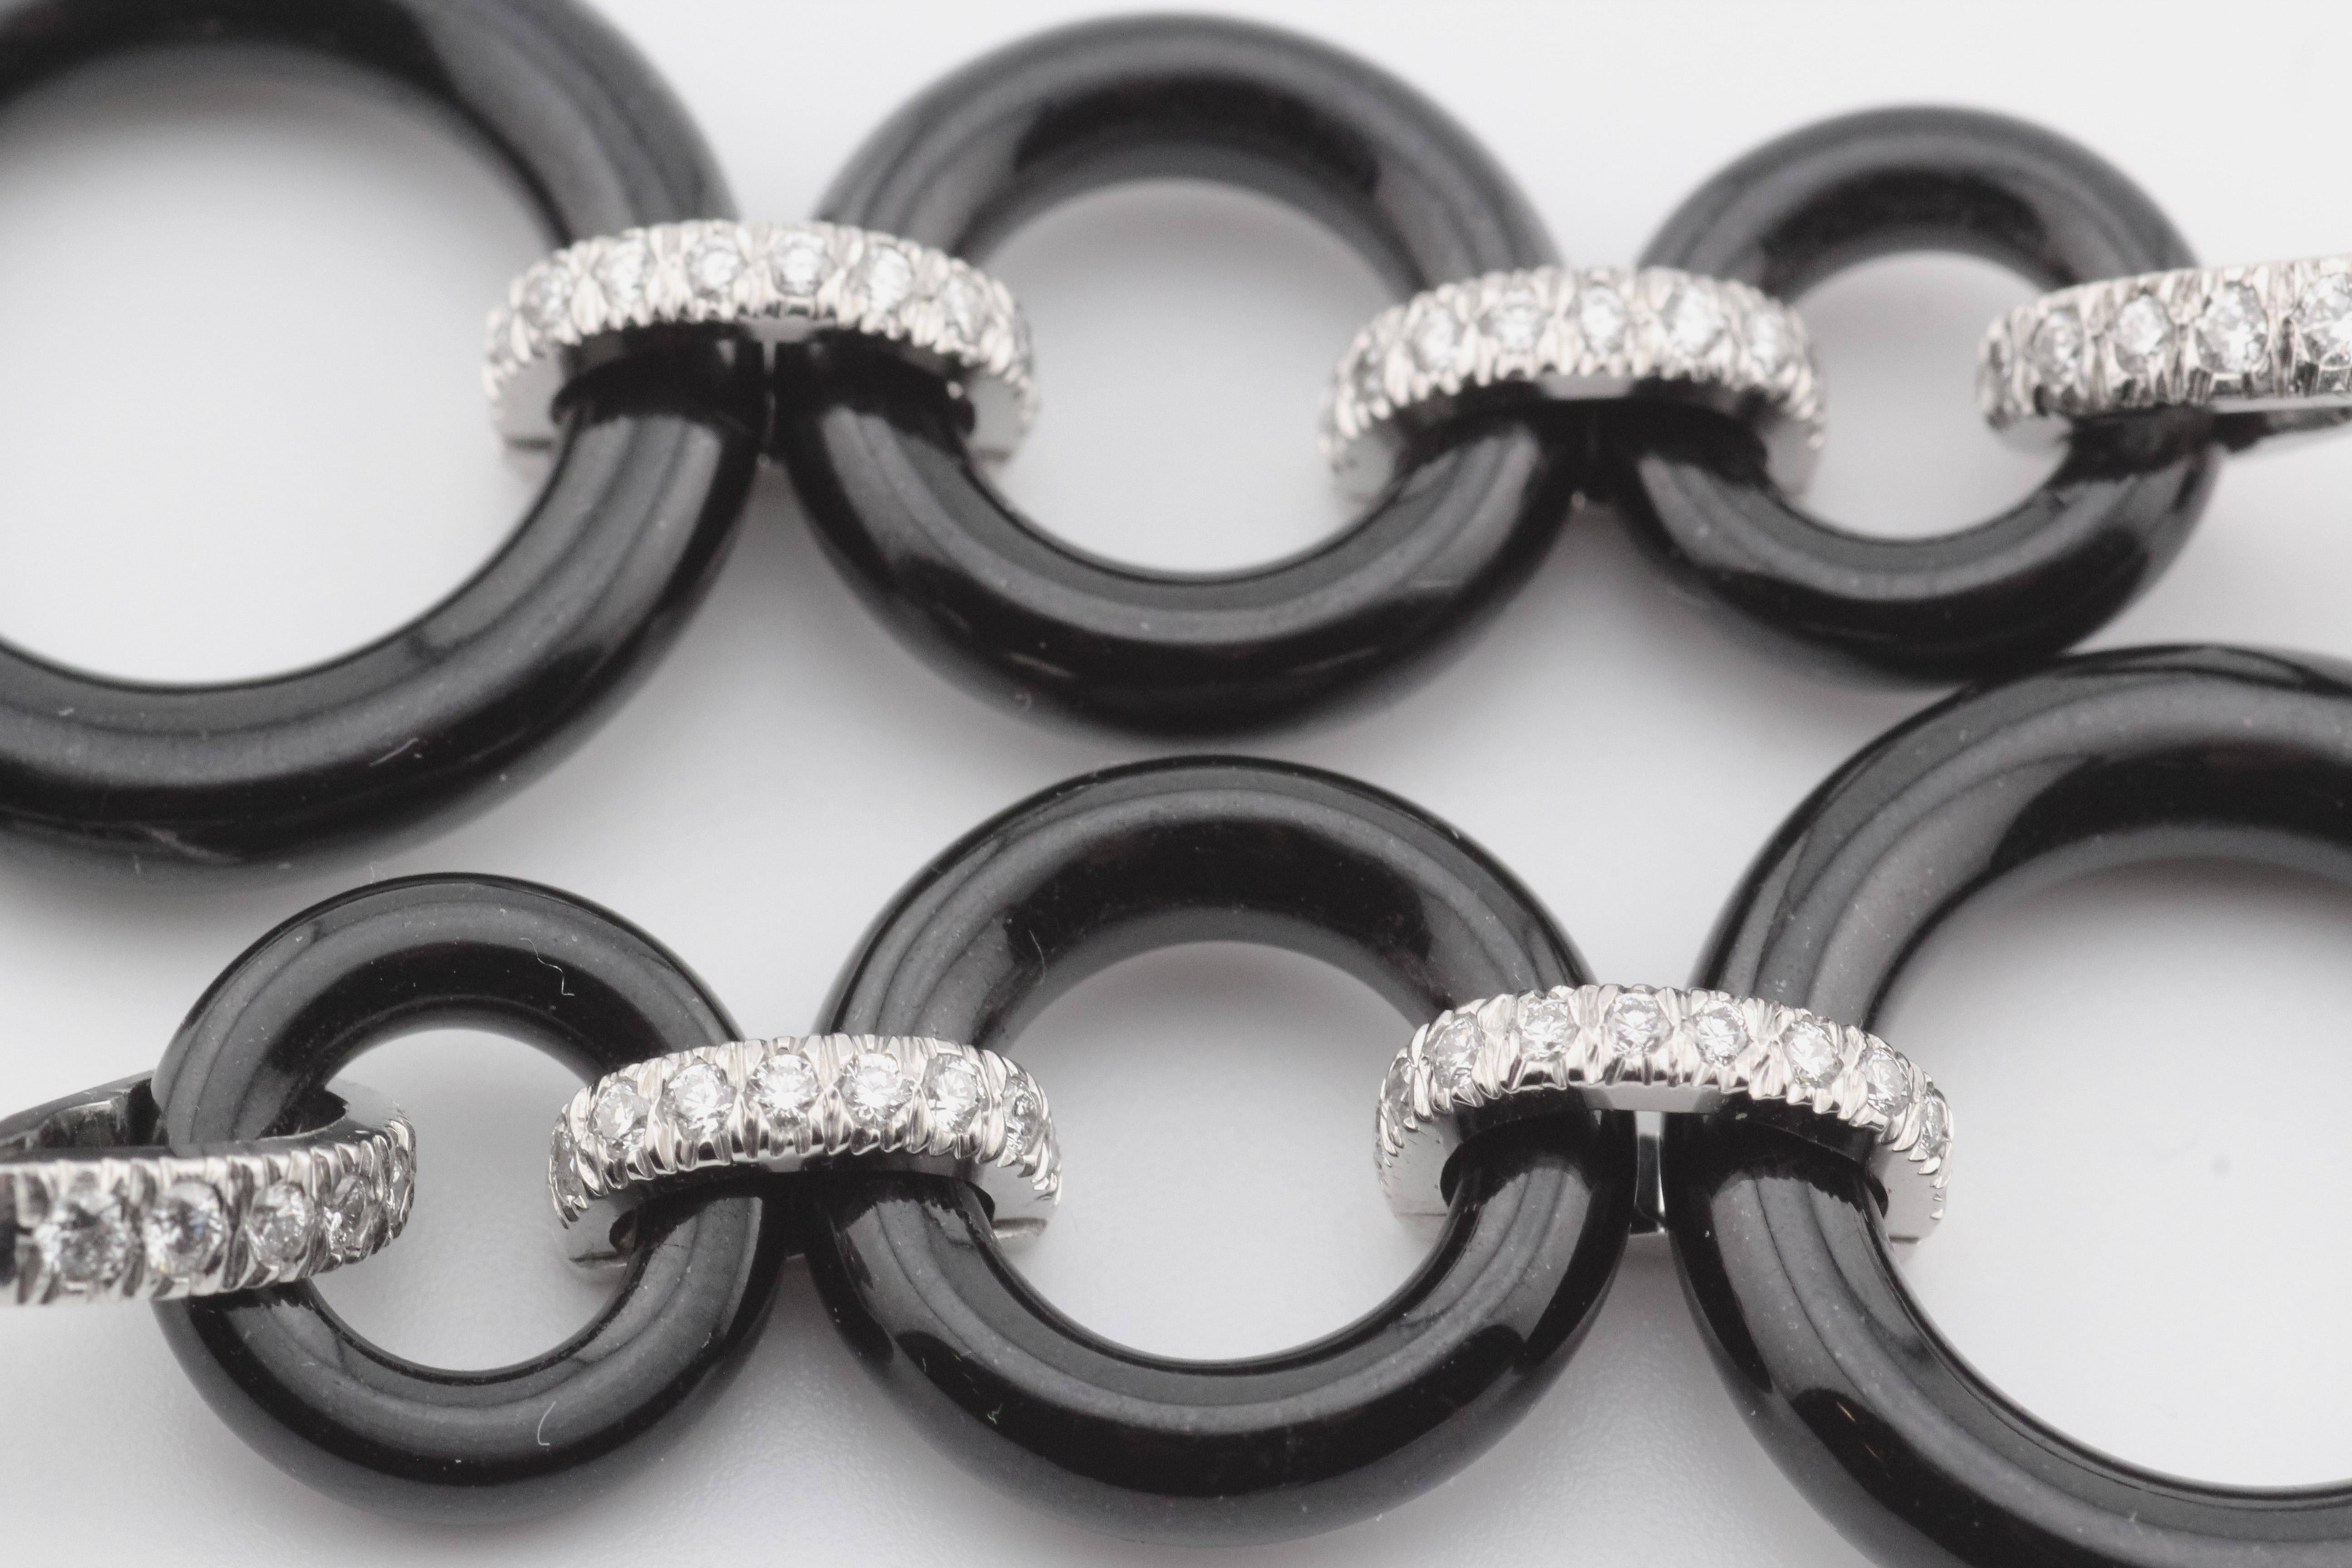 Wir stellen vor: Tiffany & Co. Tropfenohrringe aus schwarzer Jade und Diamanten aus Platin - eine exquisite Manifestation von Eleganz und Kunstfertigkeit. Diese vom renommierten Luxusunternehmen Tiffany & Co. gefertigten Ohrringe sind eine